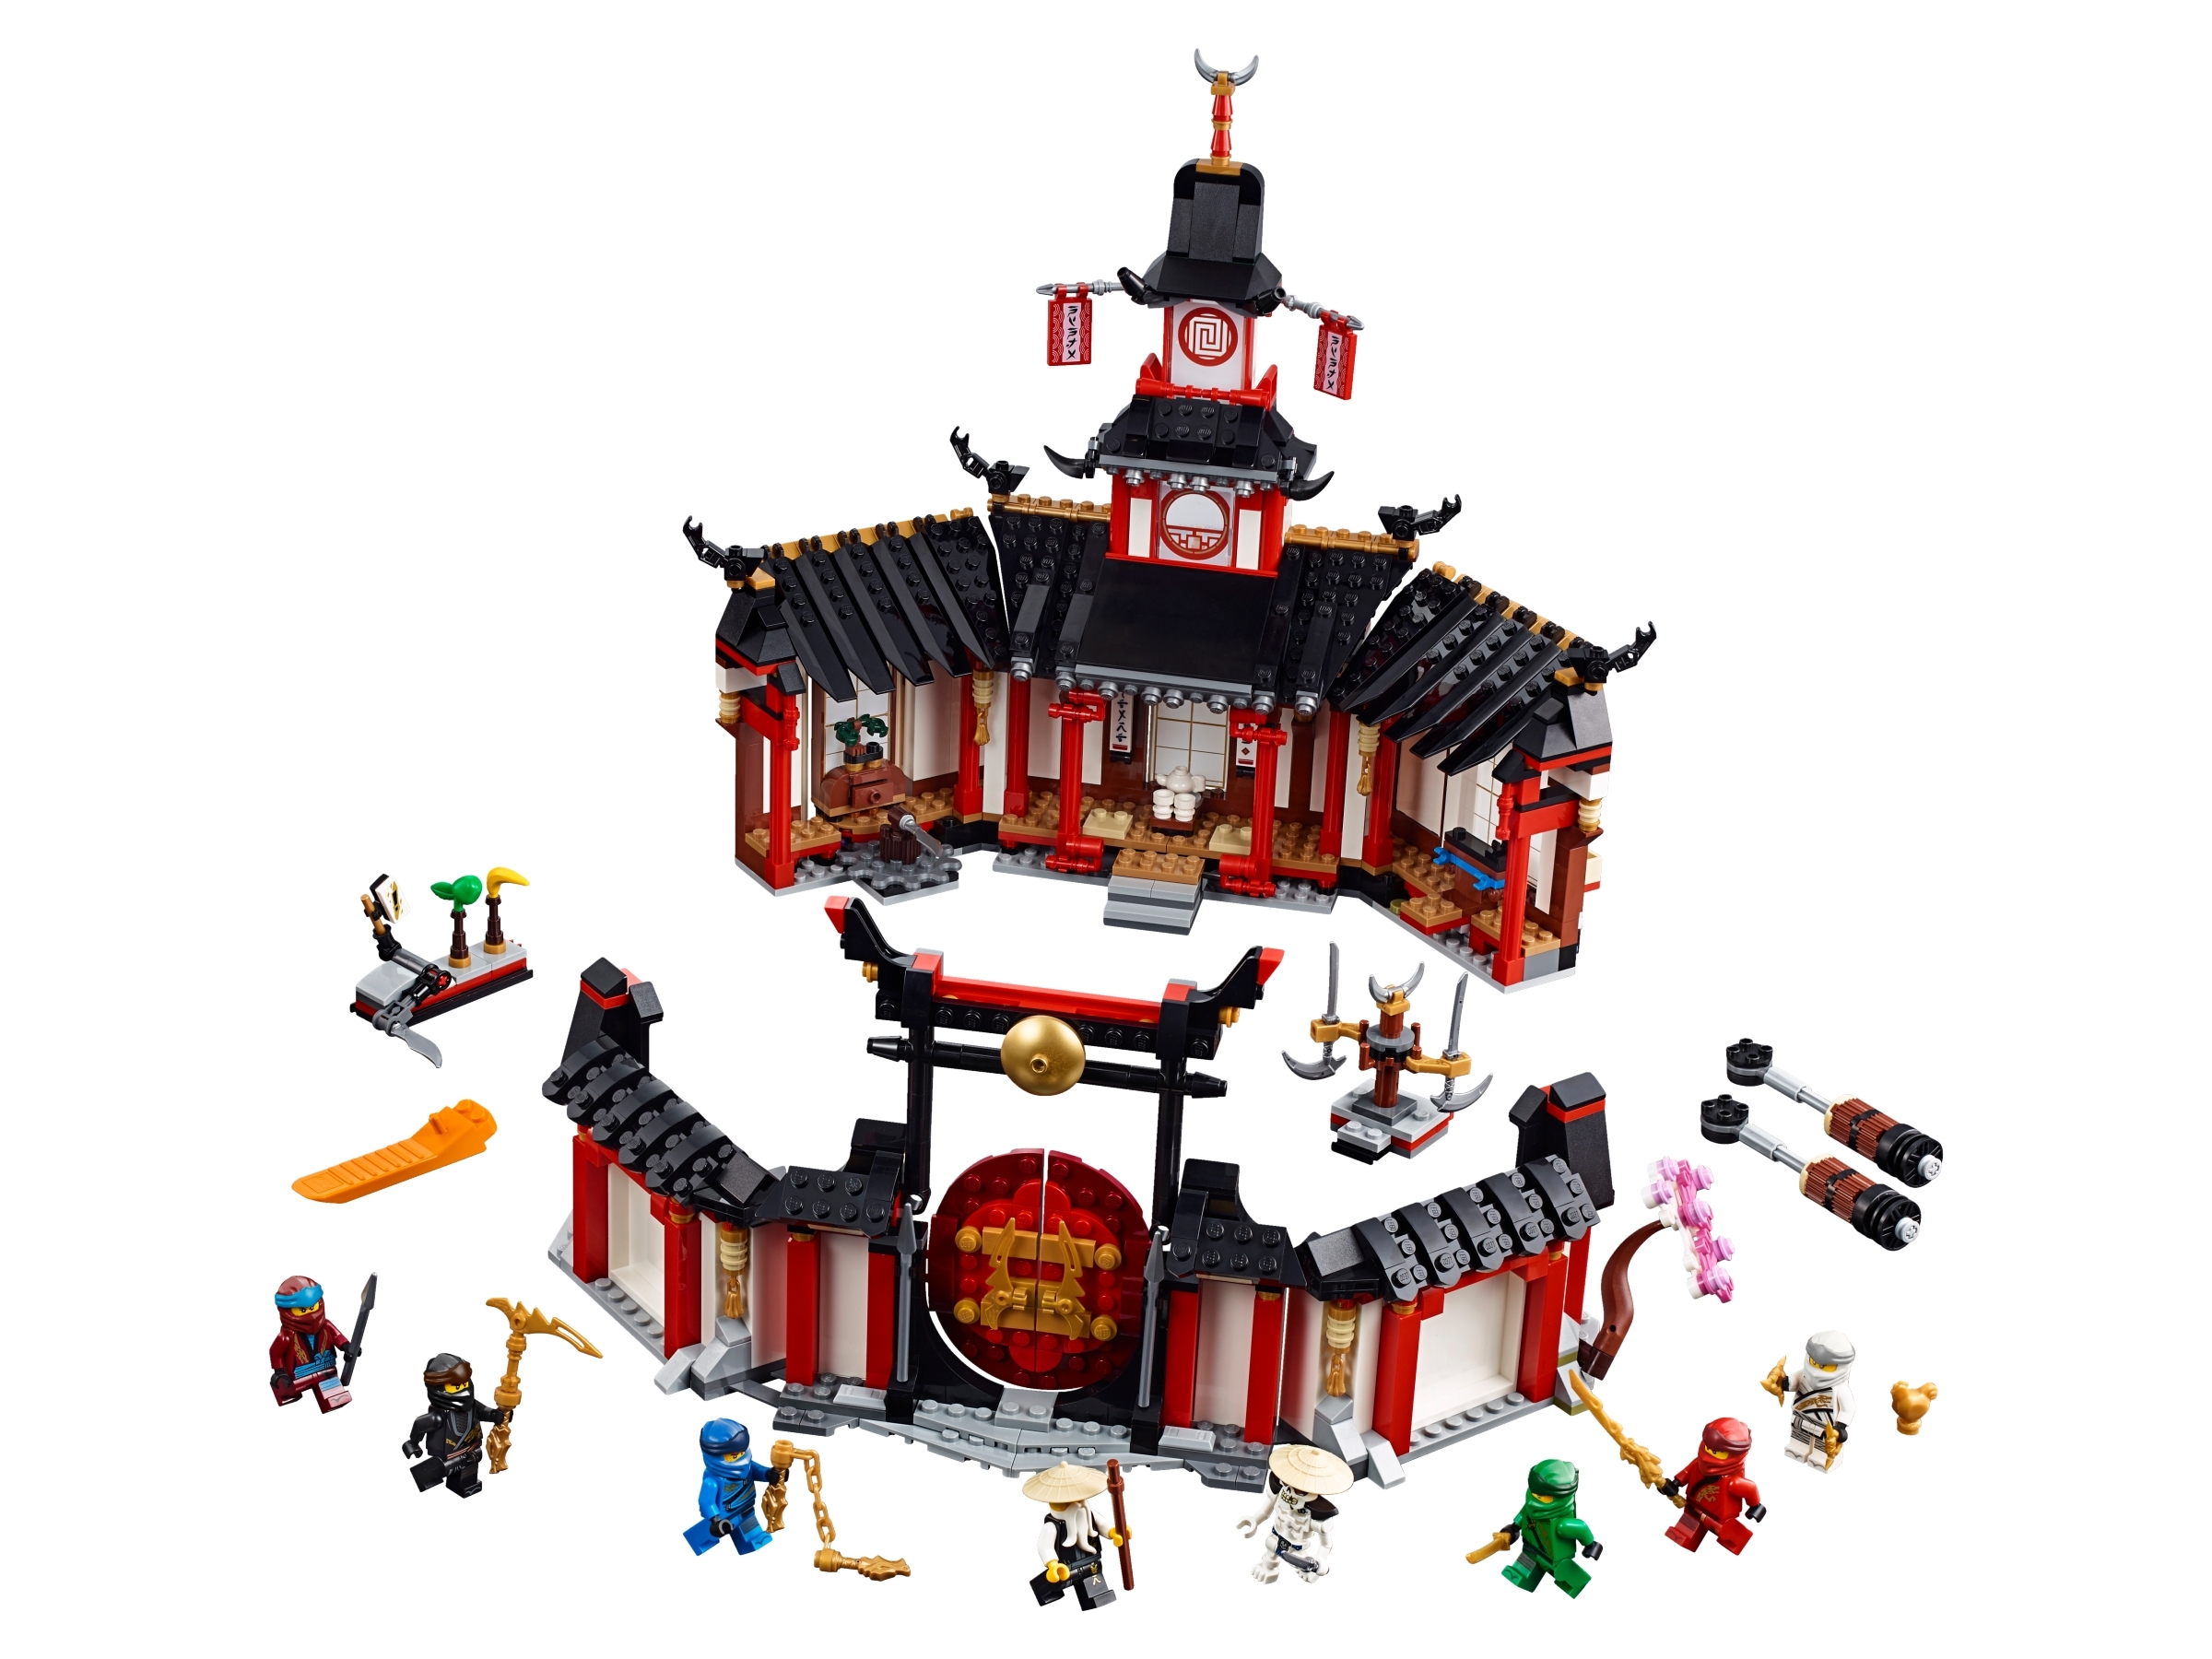 1 x lego ® minifigura de monasterio del Spinjitzu Ninjago 70670